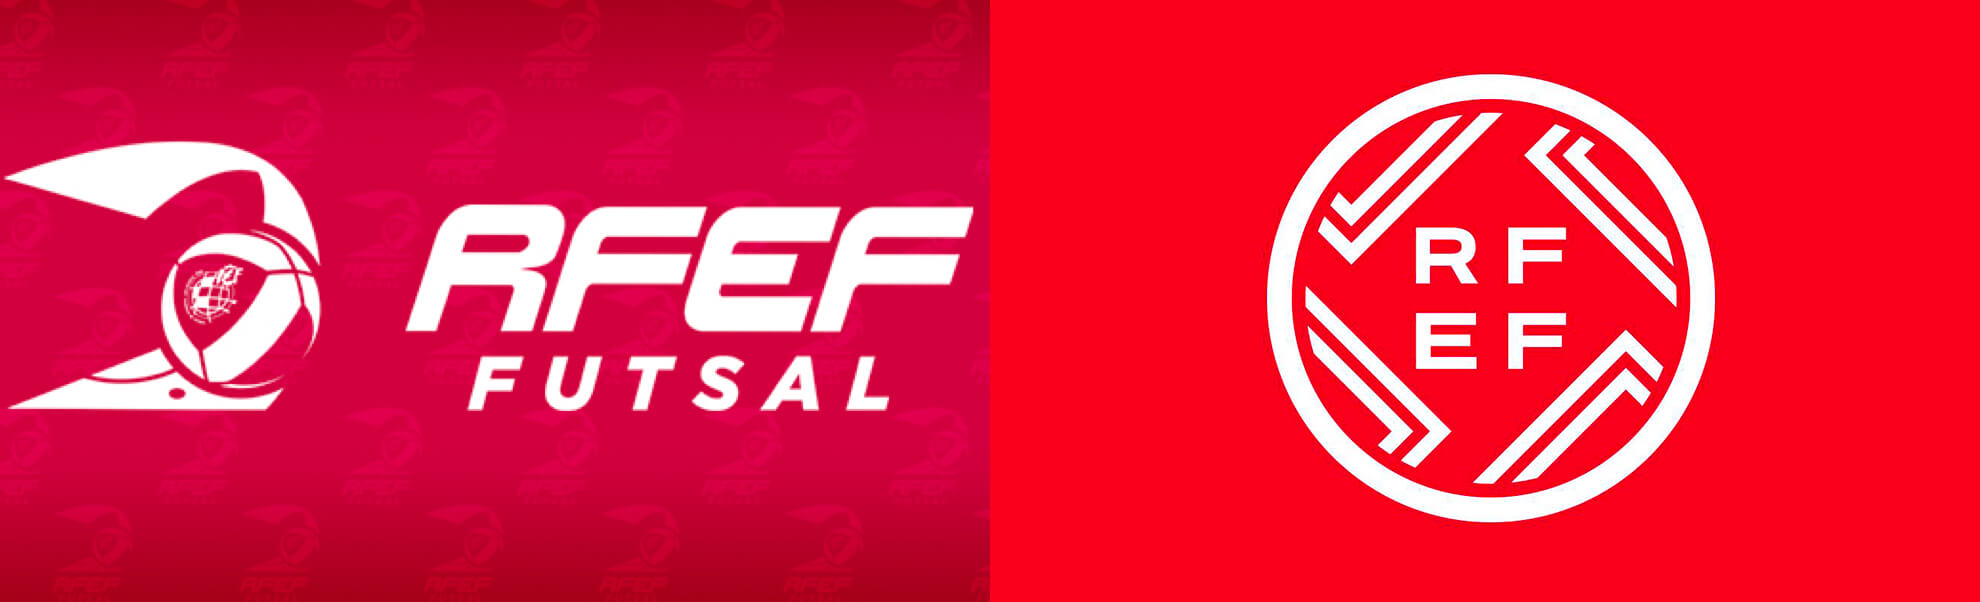 stare i nowe logo hiszpańskiego futsalu